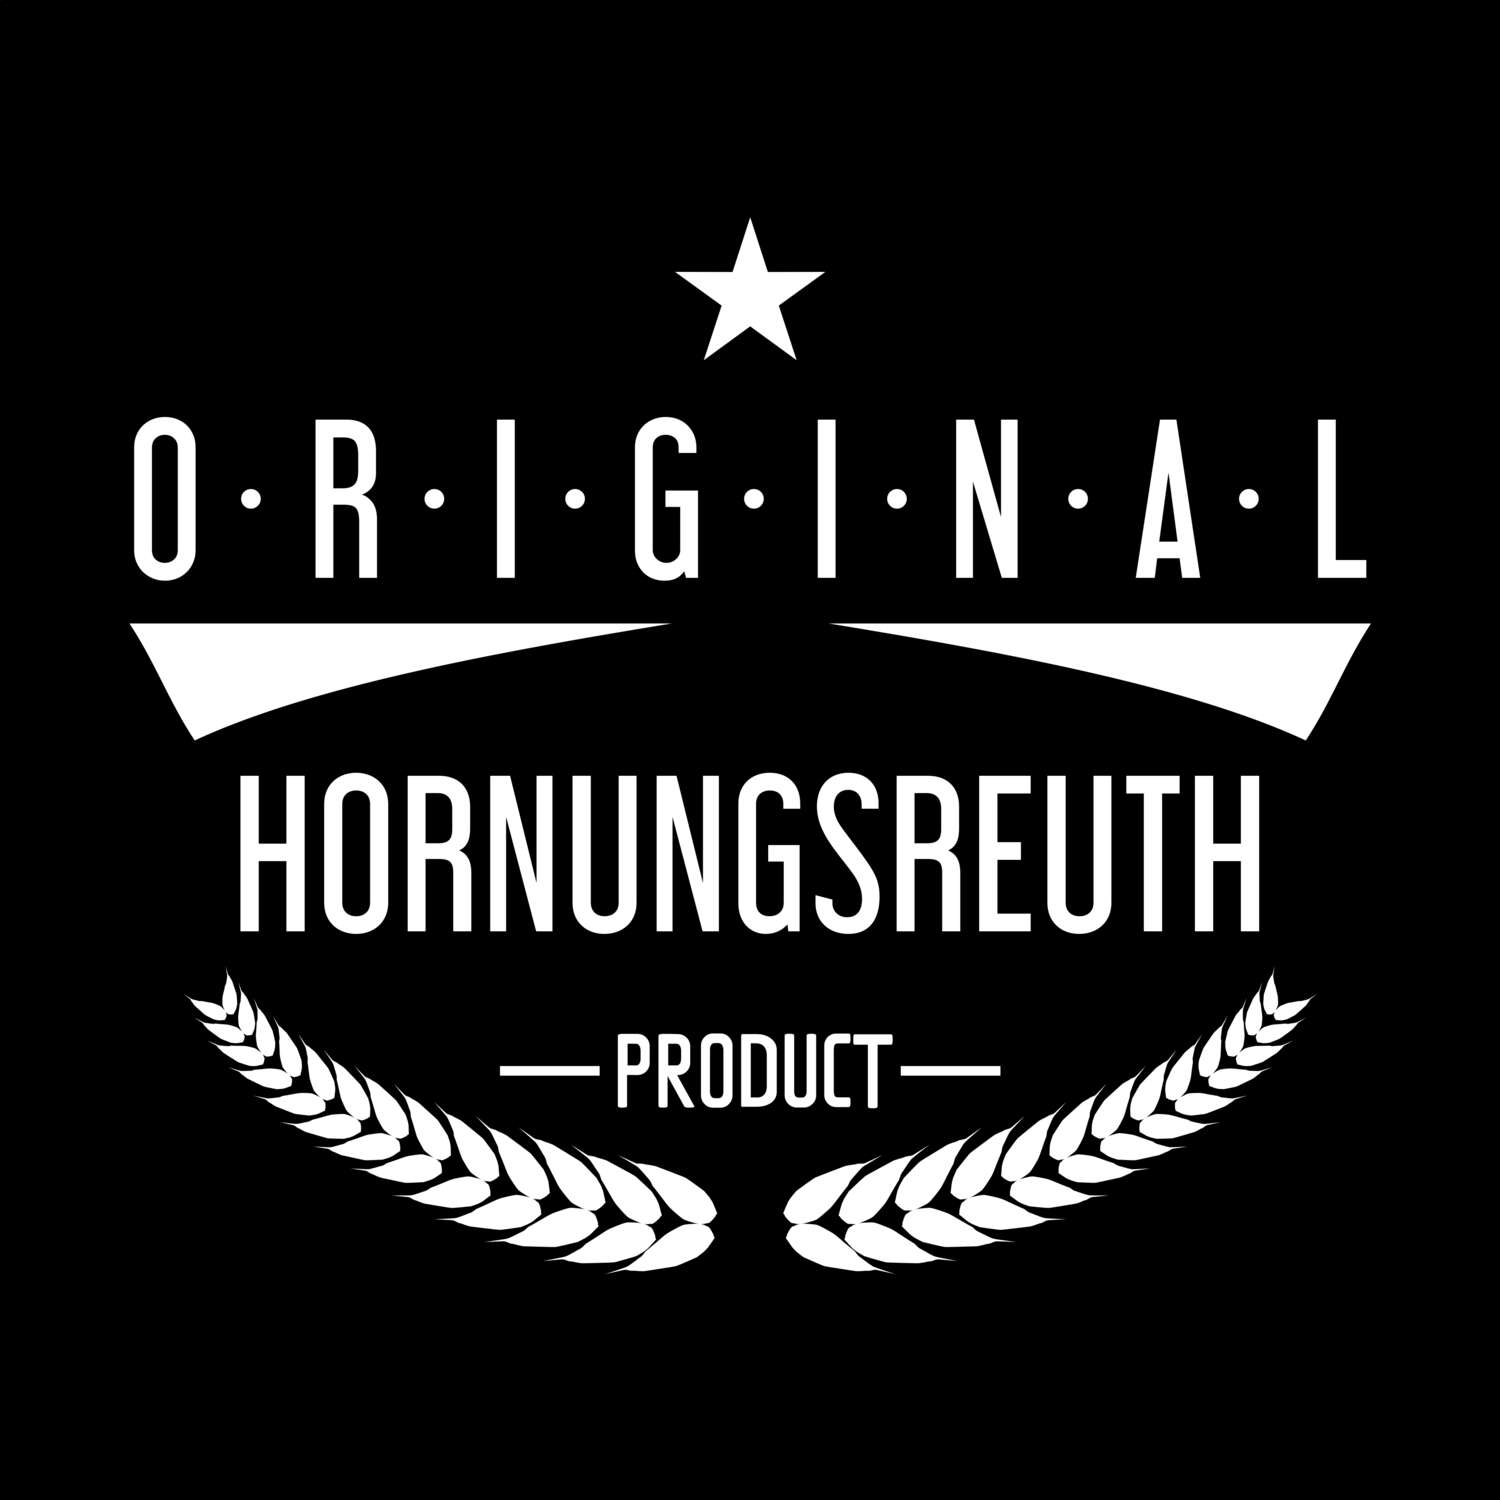 Hornungsreuth T-Shirt »Original Product«